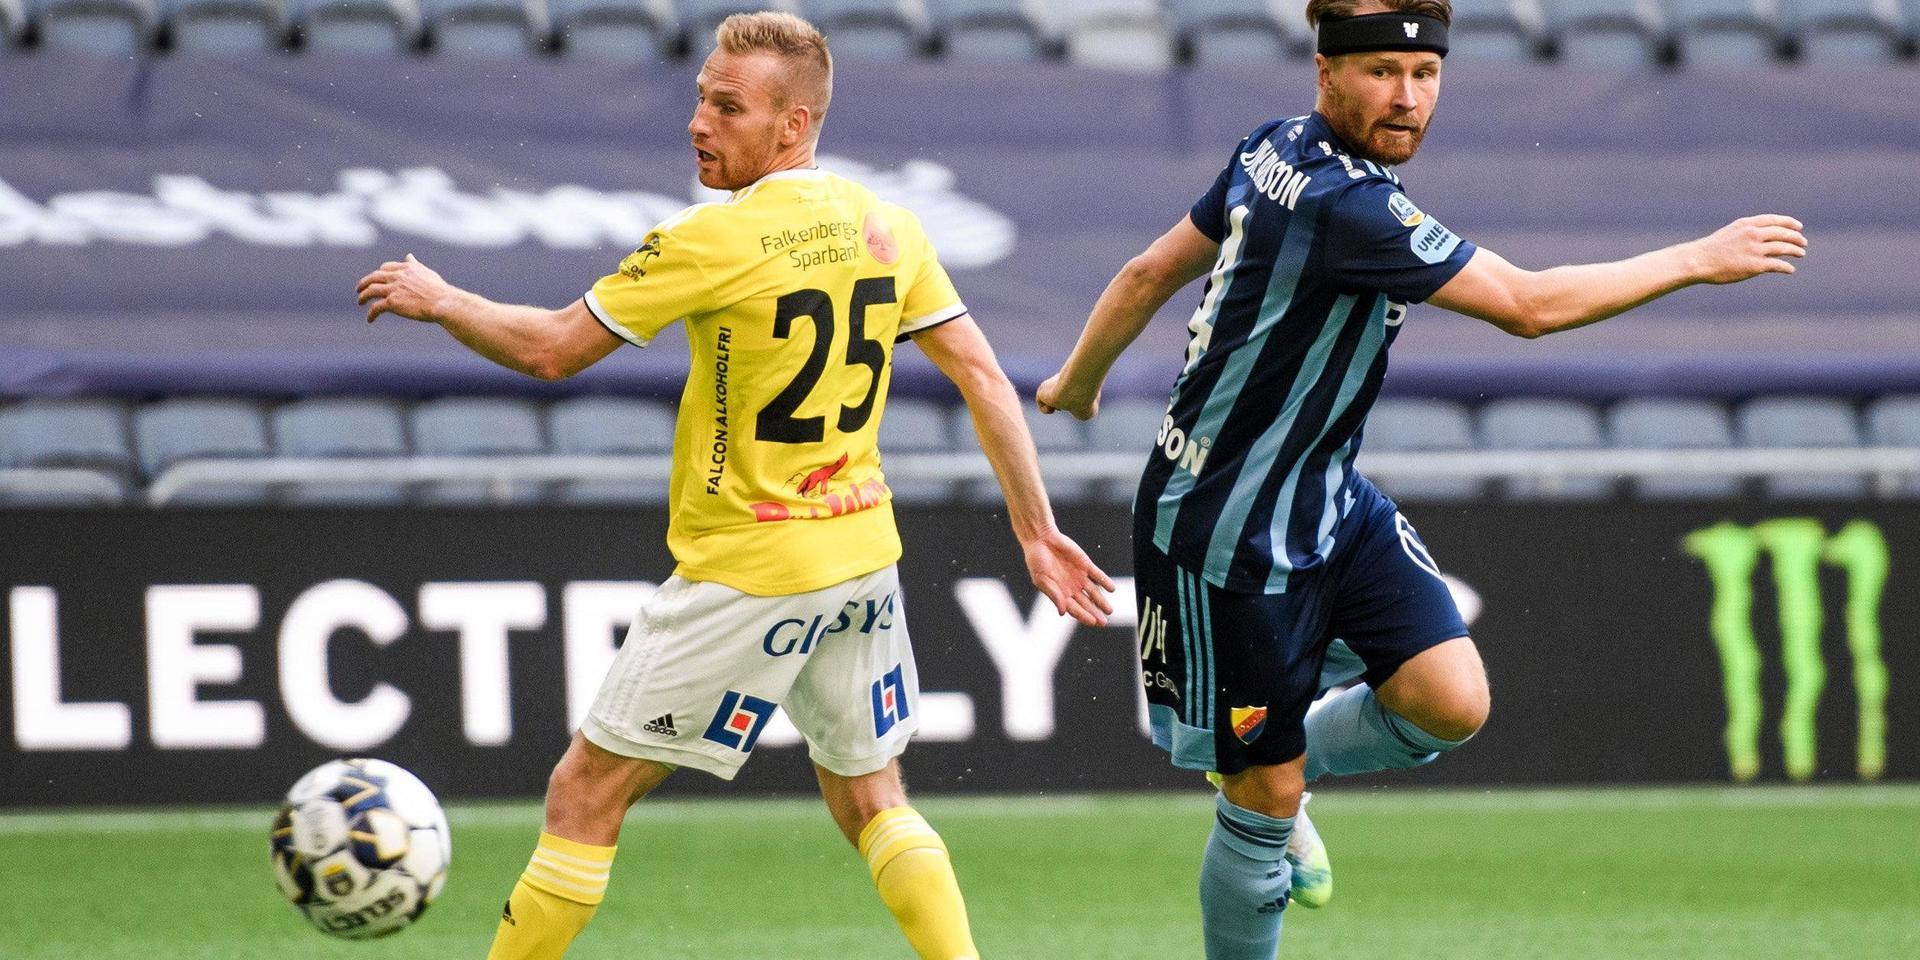 Falkenbergs Tobias Englund och Djurgårdens Jacob Une Larsson under fotbollsmatchen i Allsvenskan mellan Djurgården och Falkenberg den 15 juli 2020 i Stockholm.